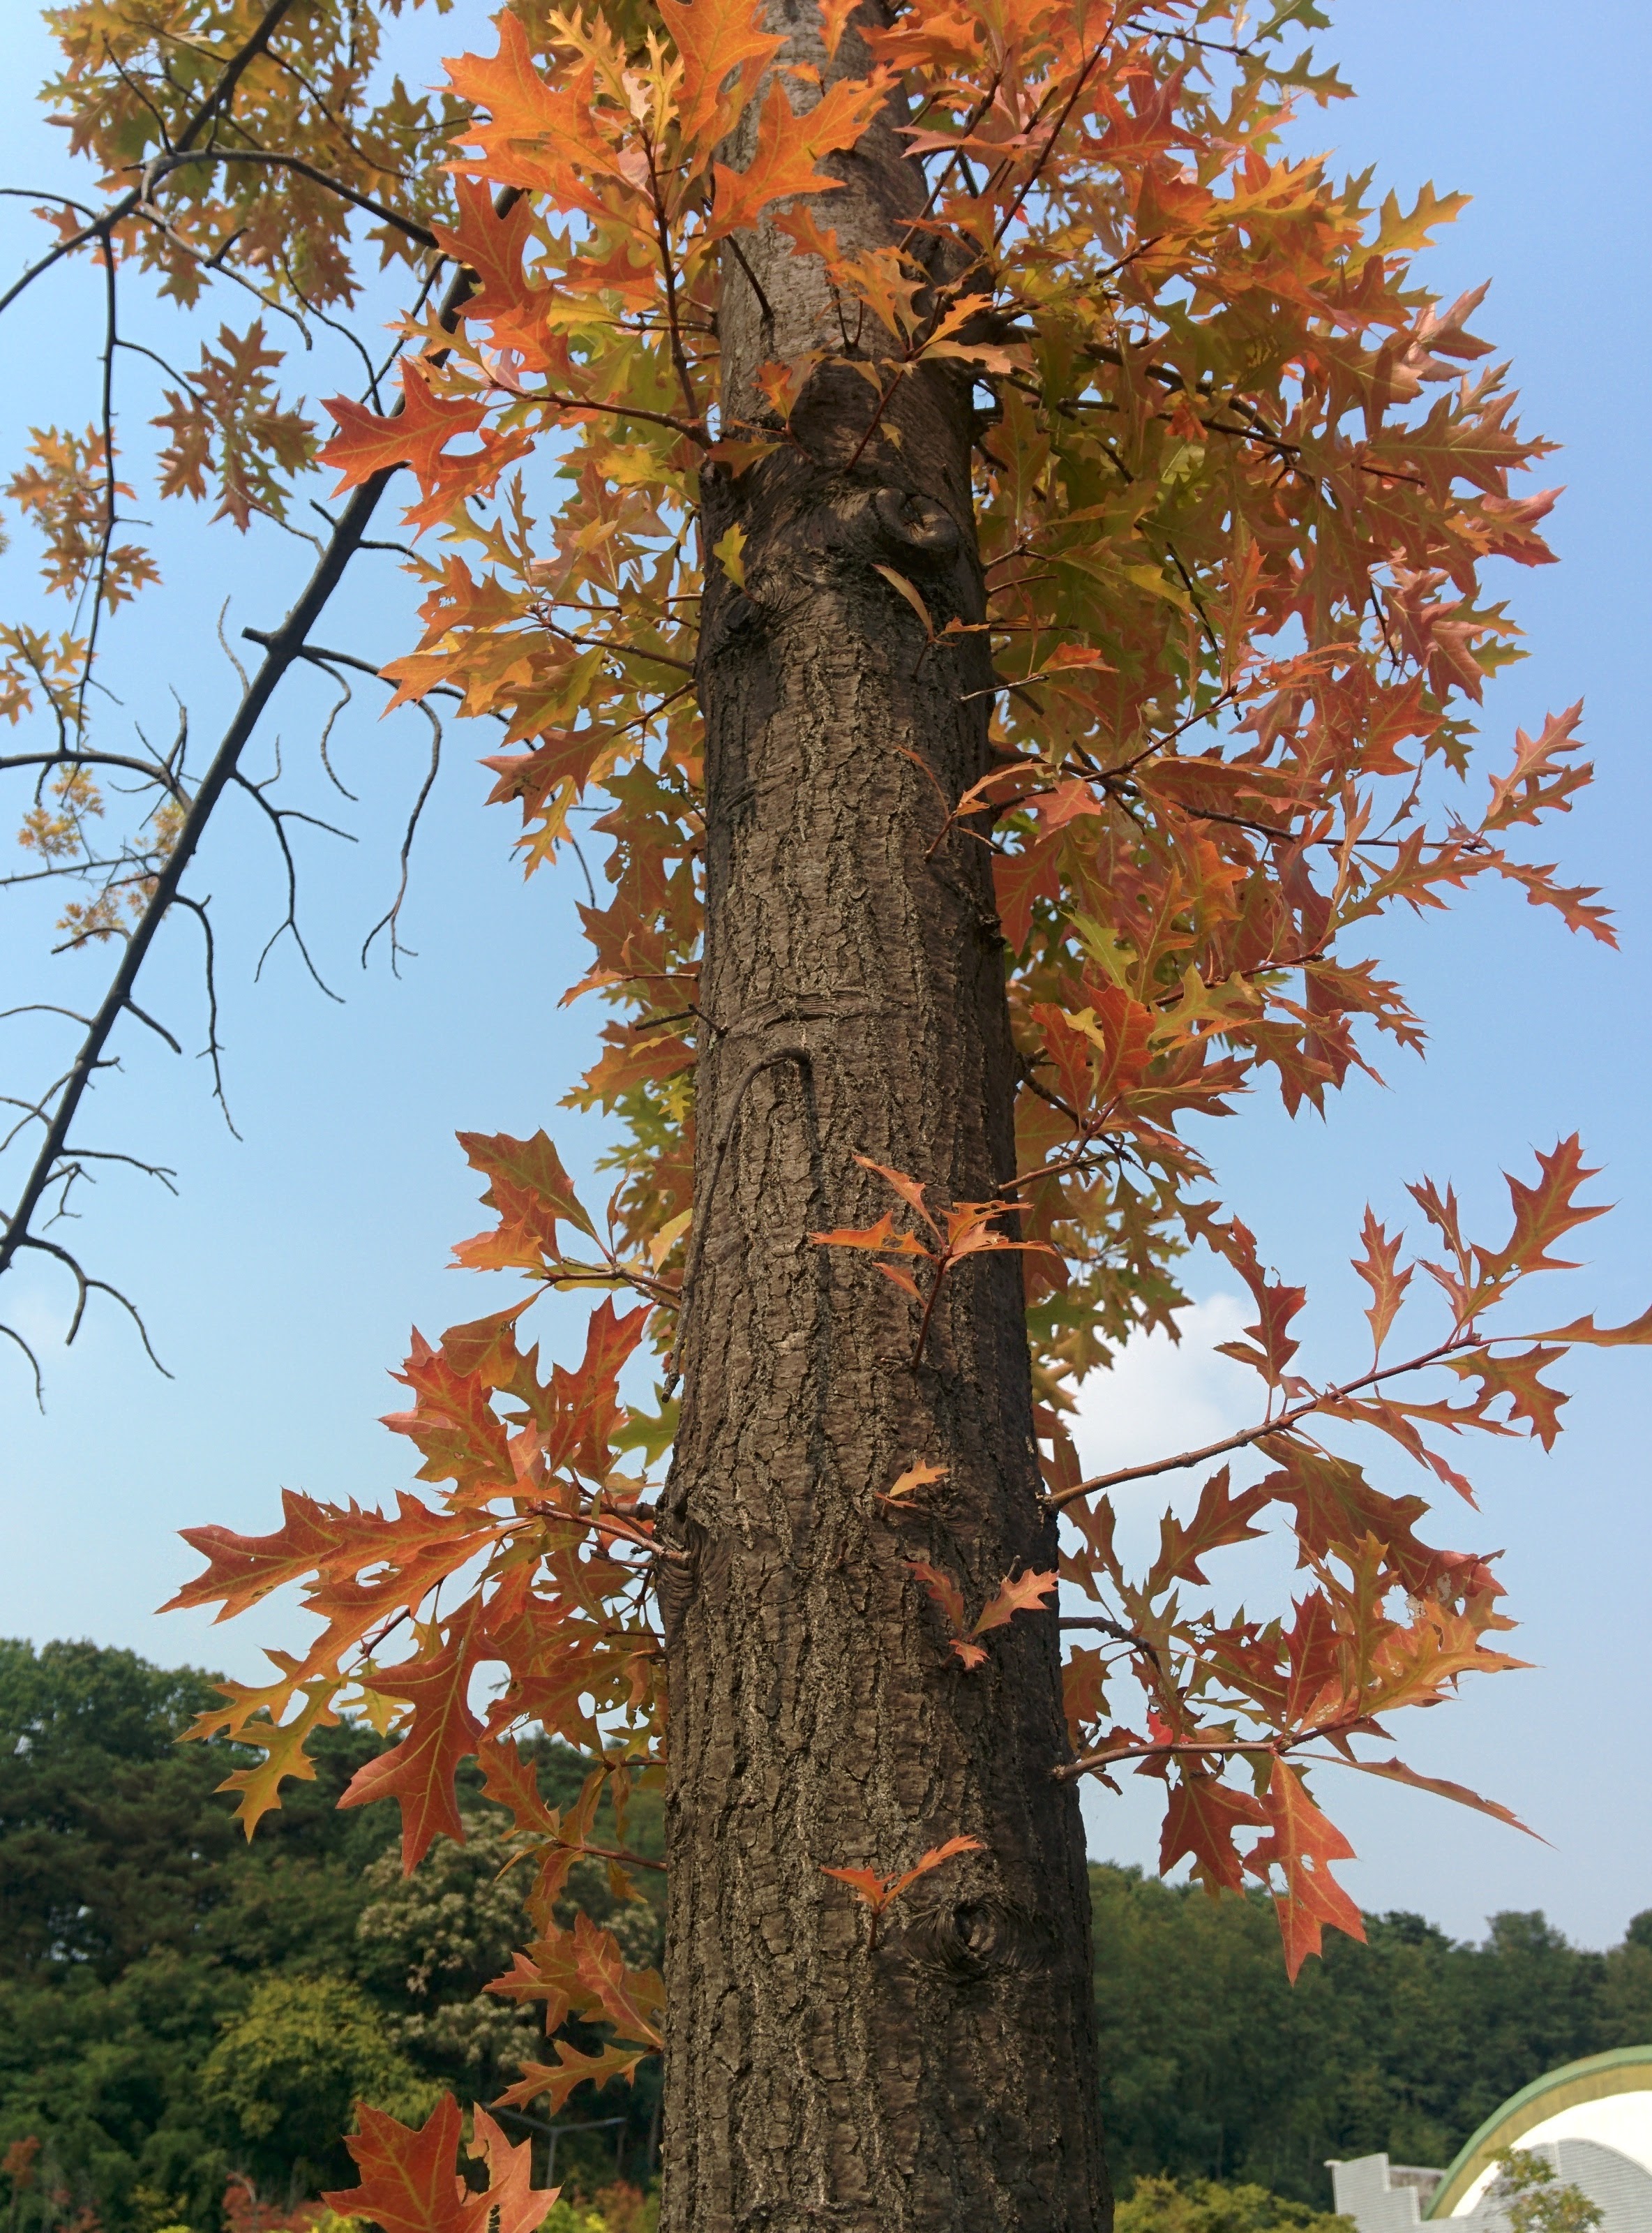 IMG_20151008_123233.jpg 길쭉한 단풍잎... 큼직한 톱니모양 나뭇잎의 단풍 -- 대왕참나무